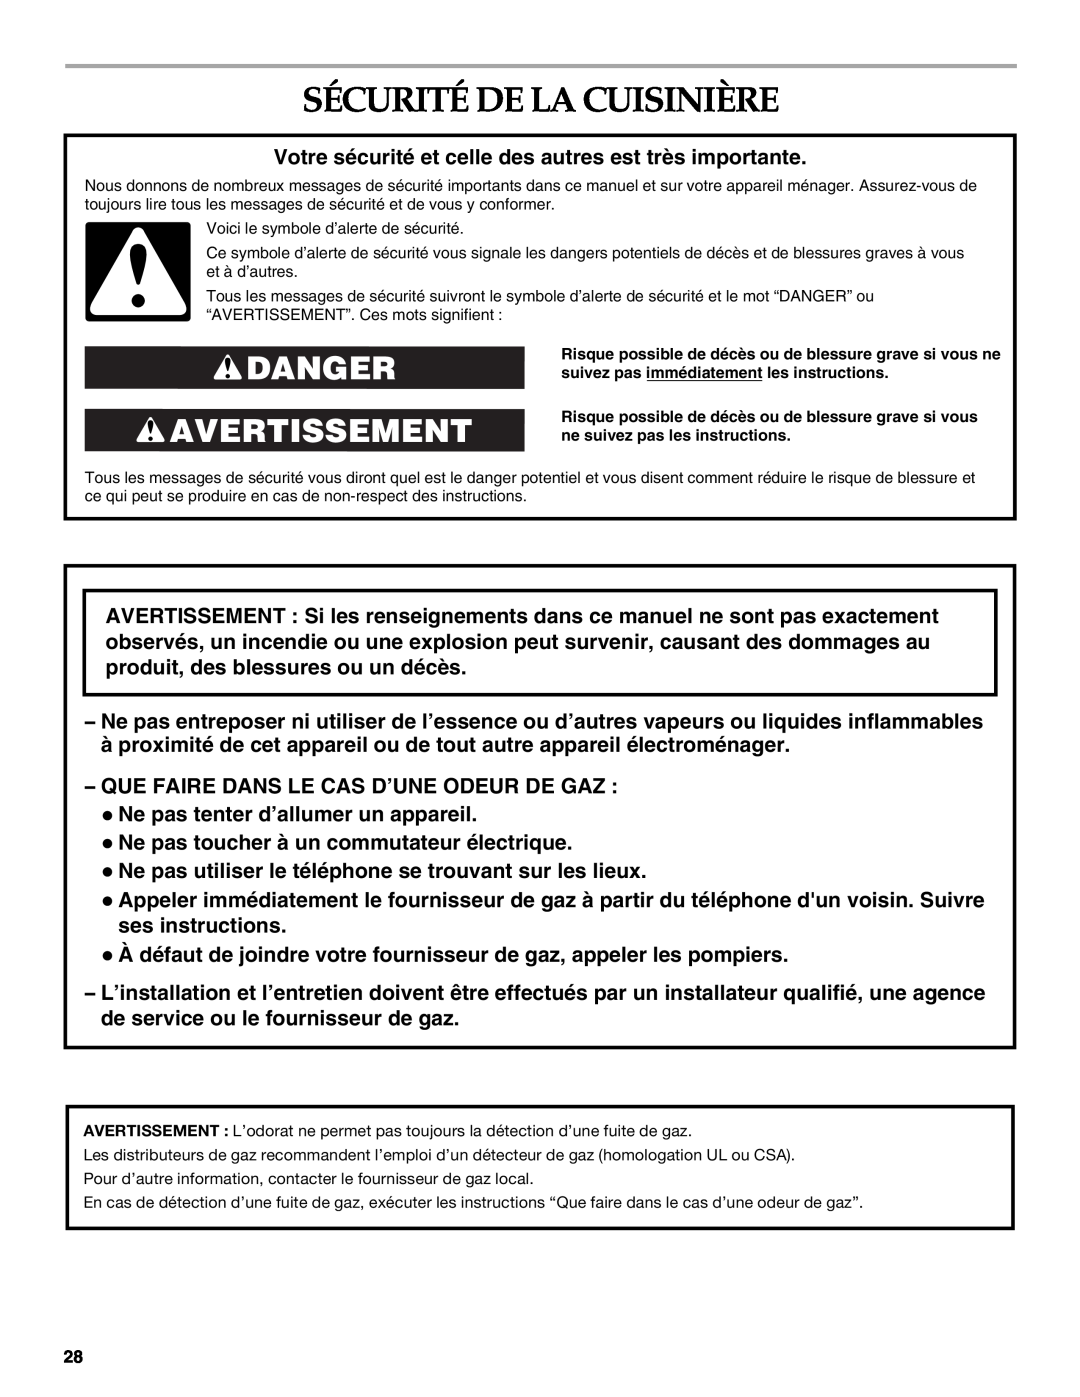 KitchenAid KDRS505XSS manual Sécurité De La Cuisinière, Danger Avertissement 